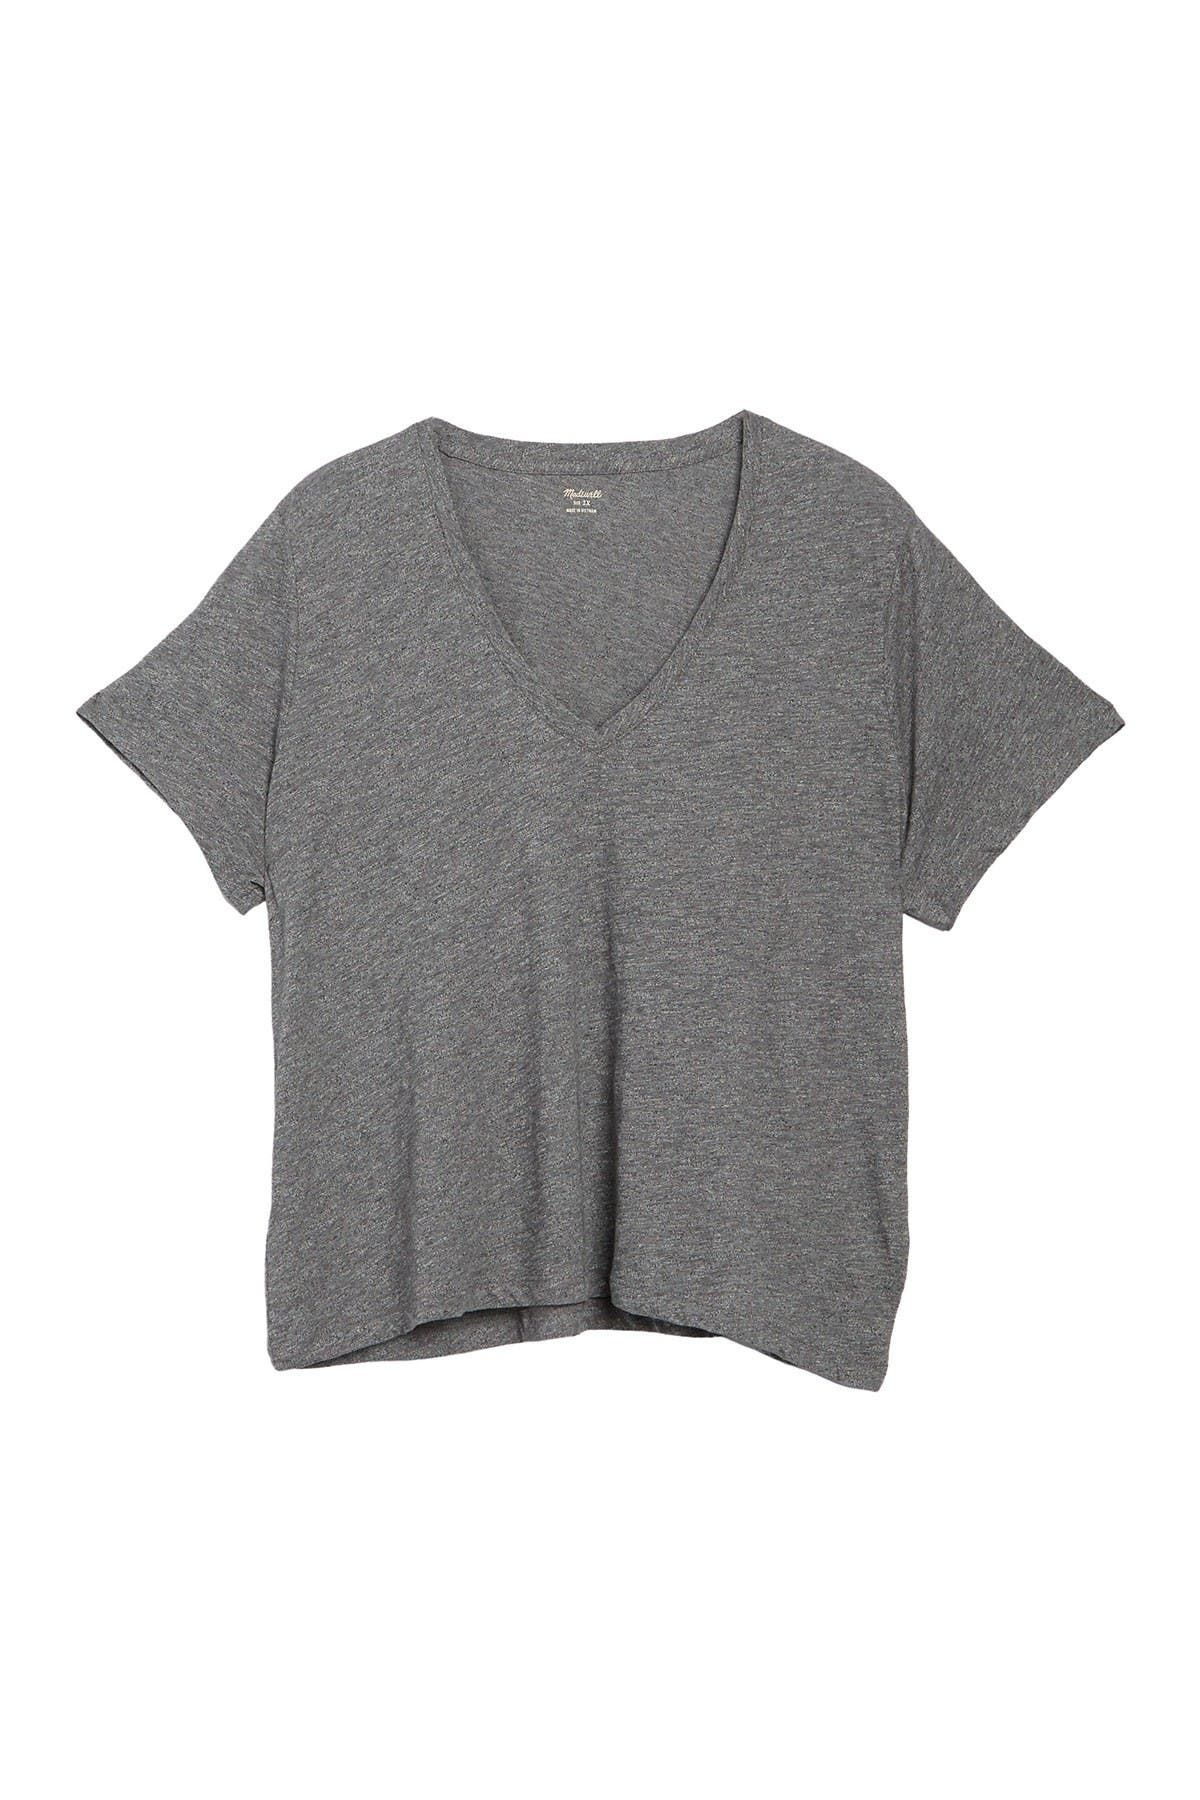 Madewell V-neck Short Sleeve T-shirt In Dark Grey1